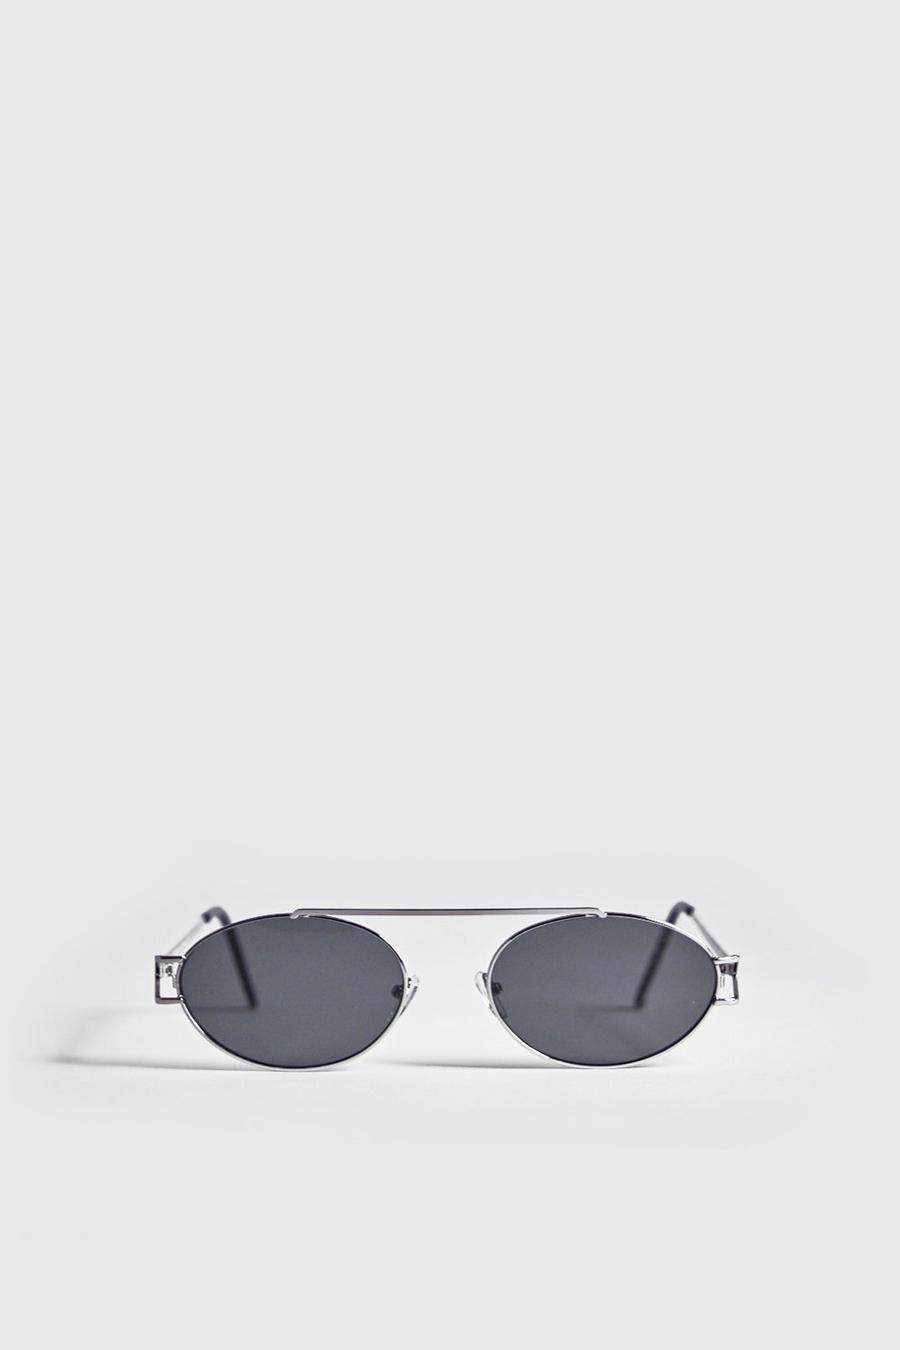 Silver Black Lens Round Metal Frame Sunglasses image number 1